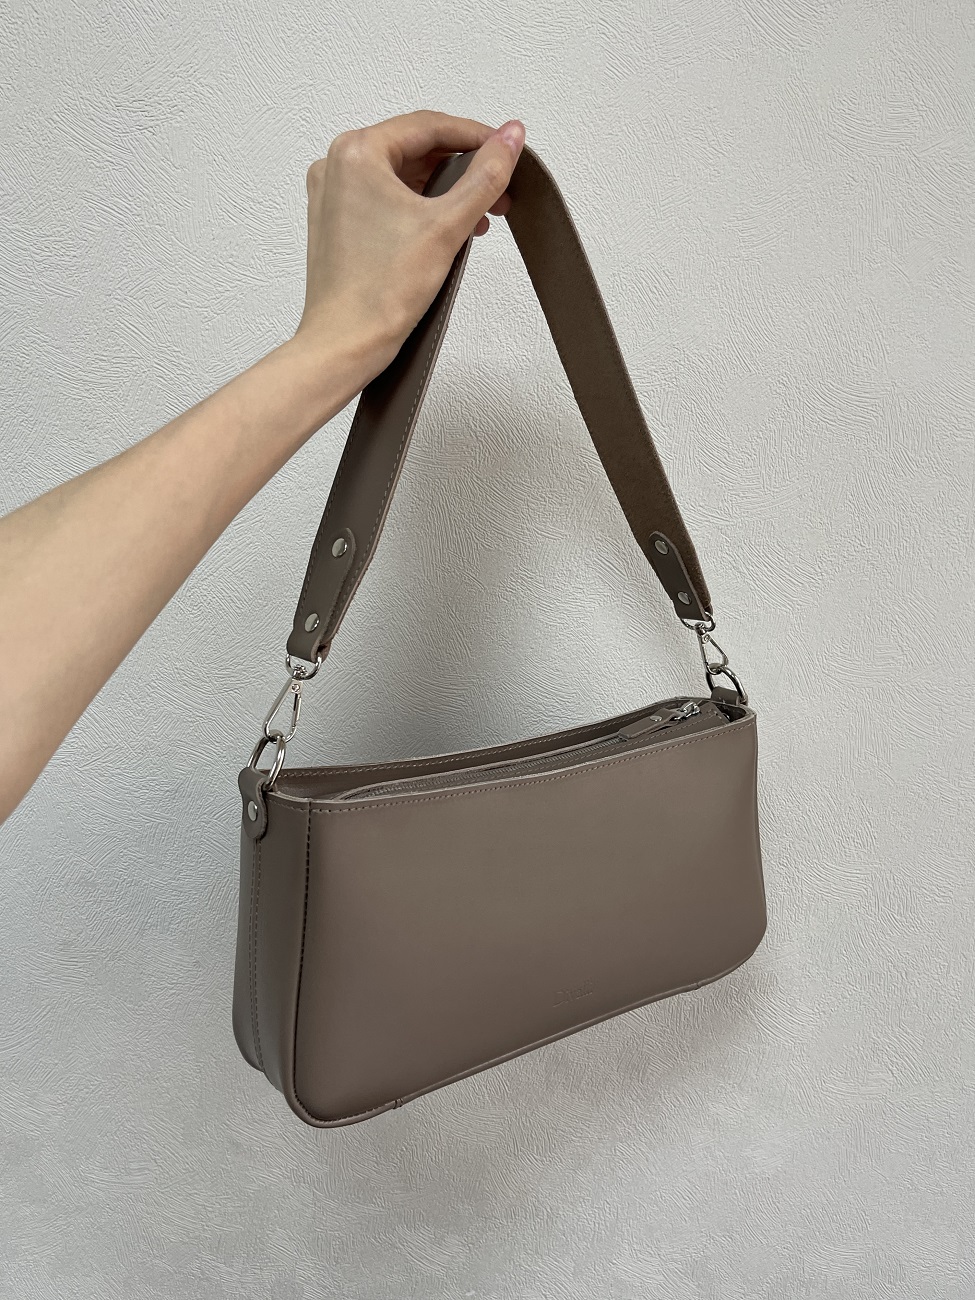 Женская кожаная сумка-багет тауп A041 taupe